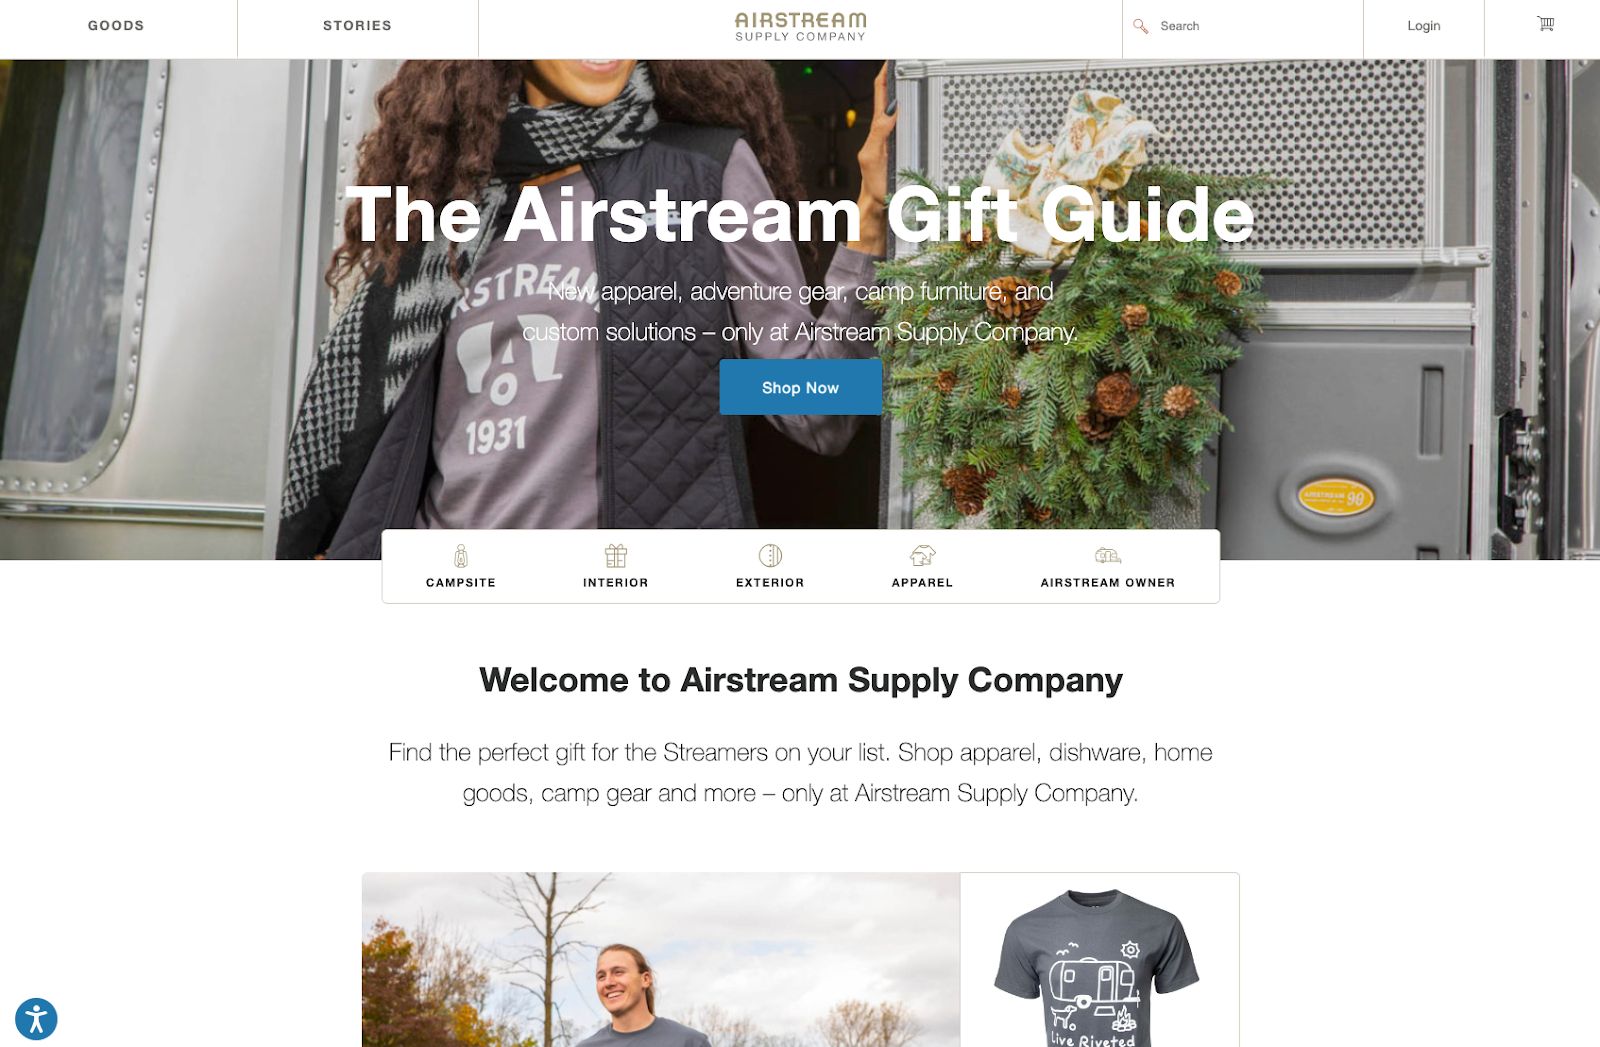 Airstream website using wordpress